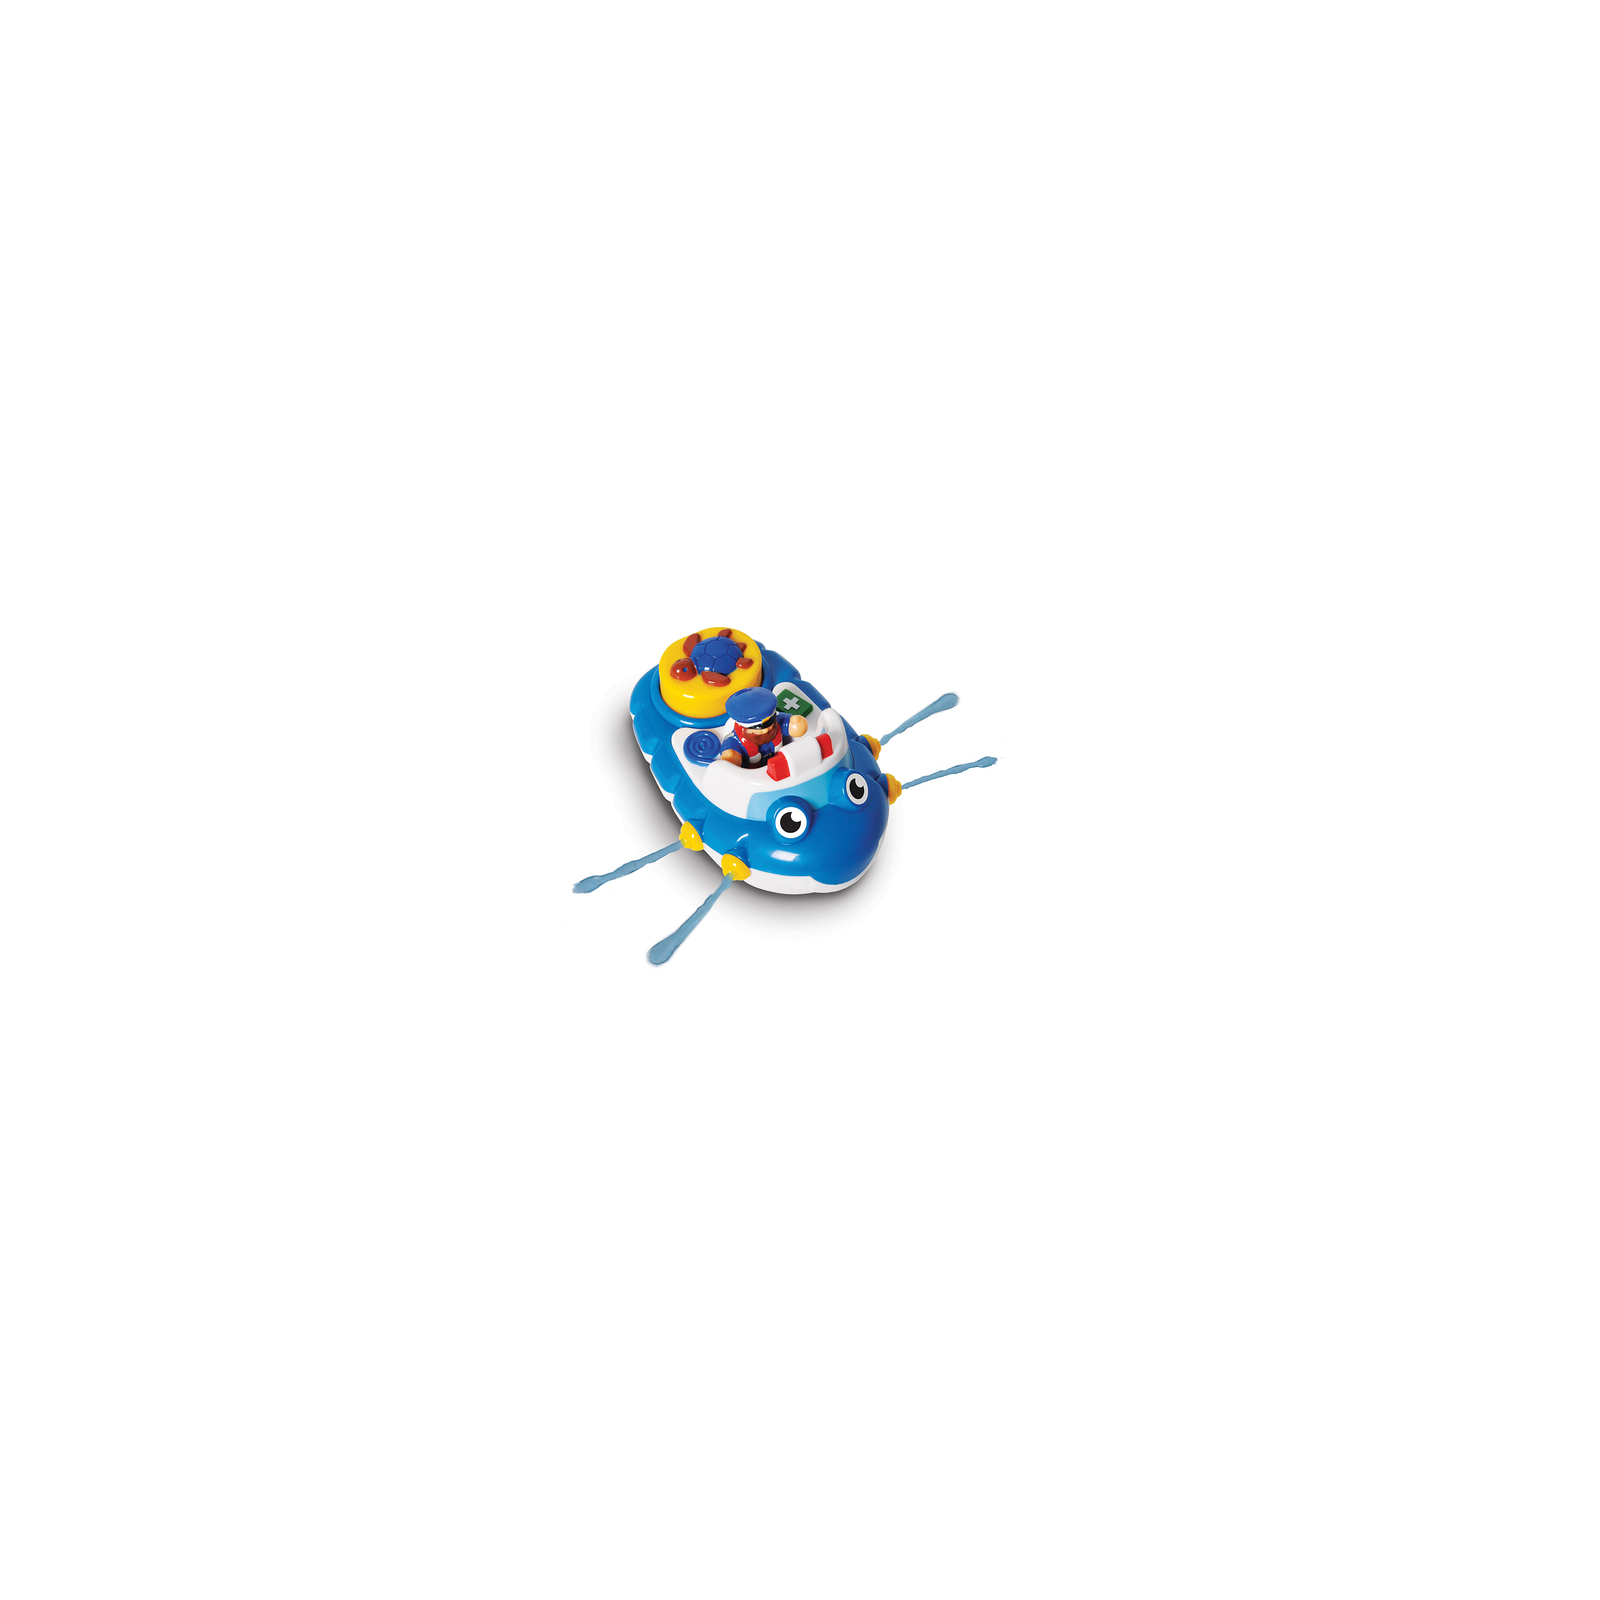 Развивающая игрушка Wow Toys Полицейская лодка Перри (10347) изображение 2